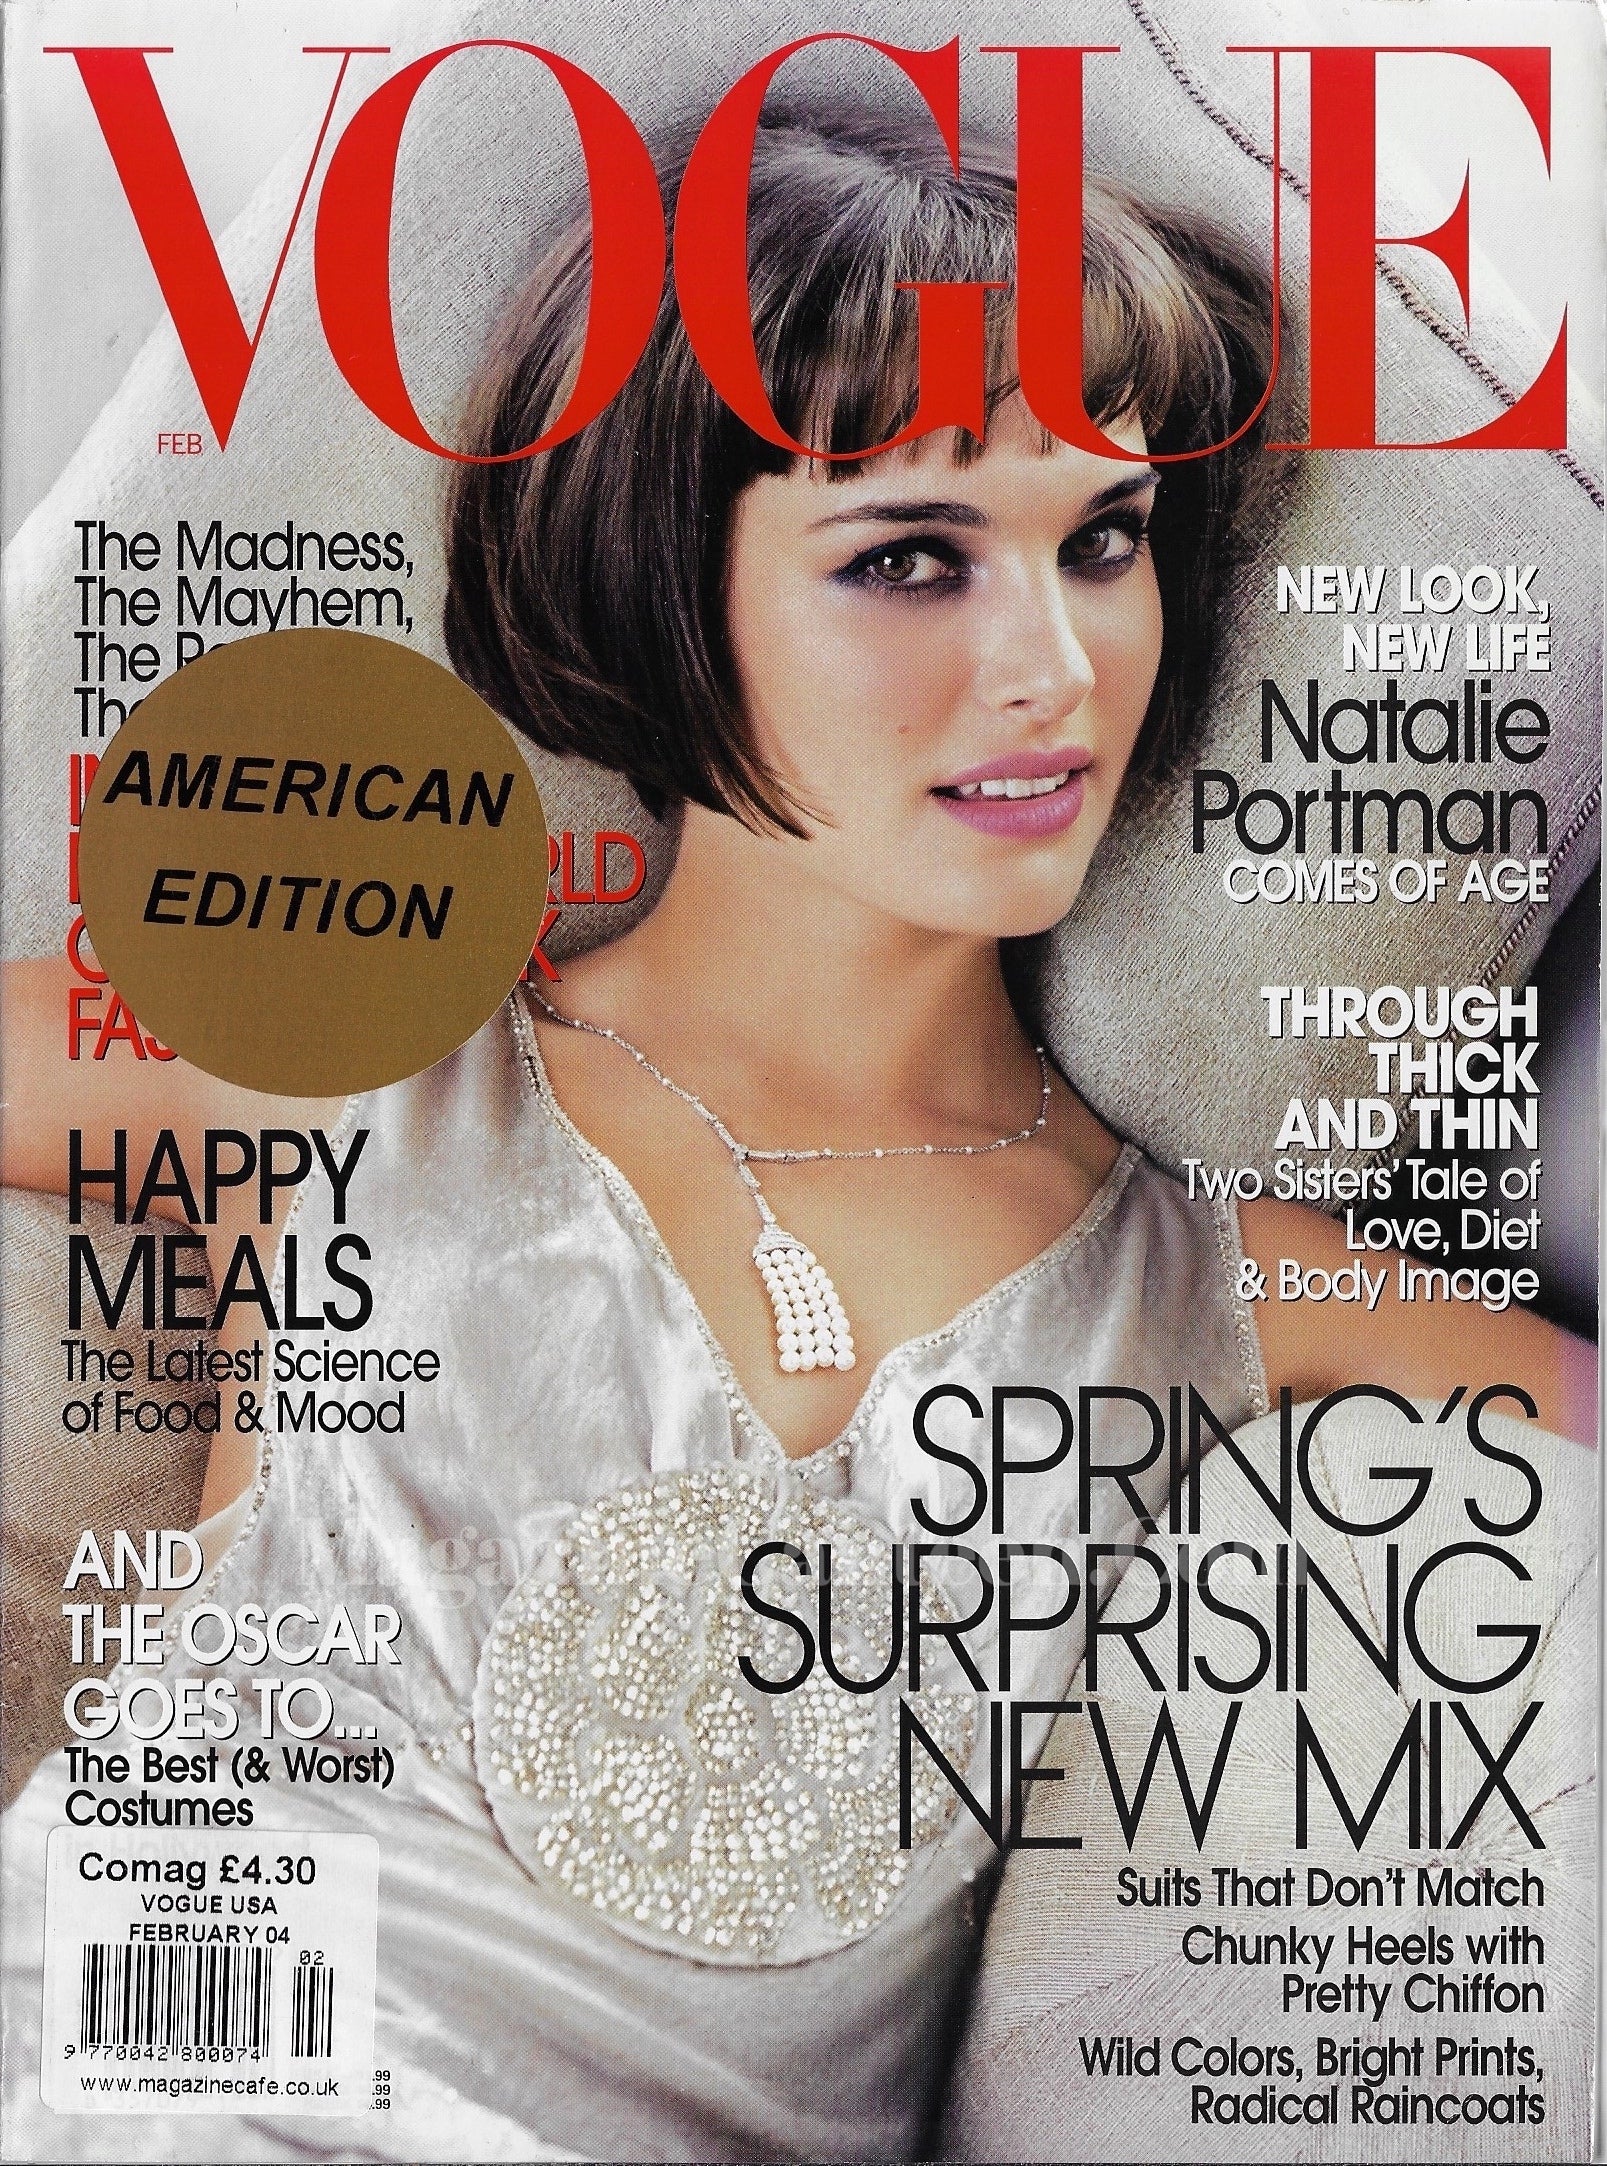 Vogue USA Magazine February 2004 - Natalie Portman